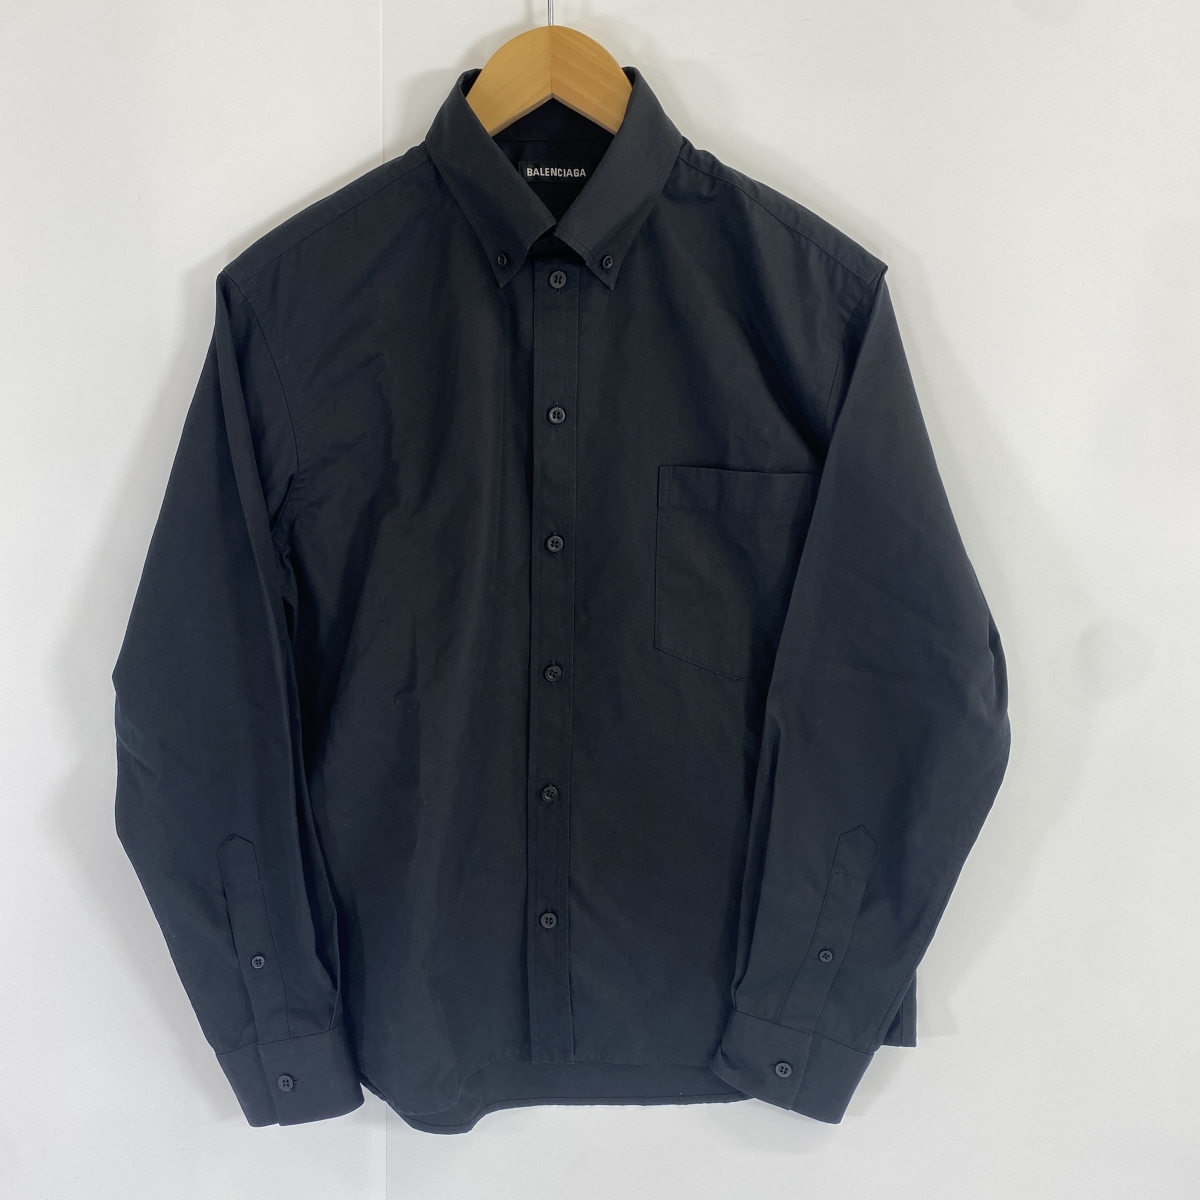 バレンシアガの21SS ブラック ボタンダウンコットンシャツ 642266の買取実績です。